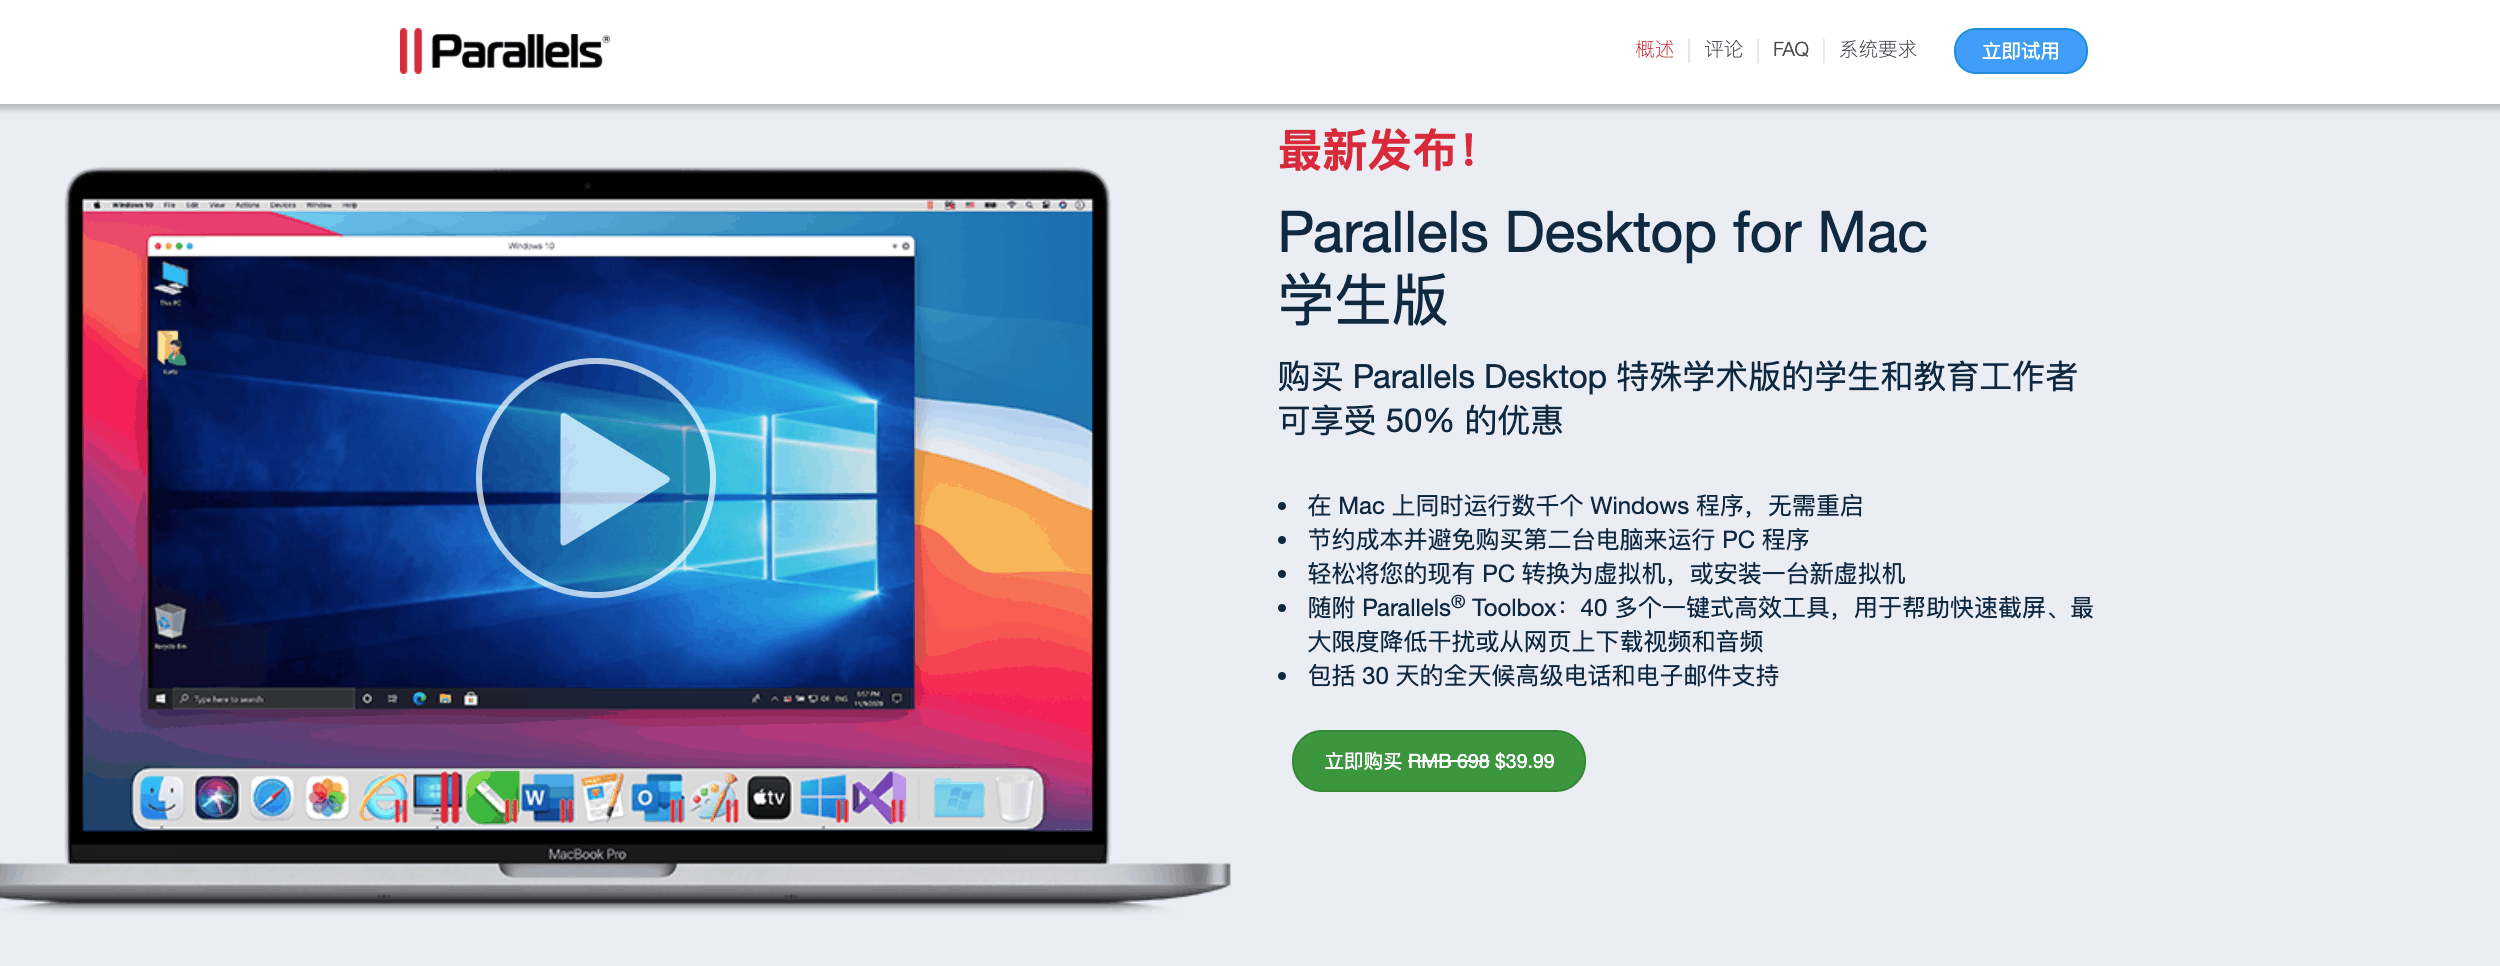 parallel desk 16 mac 优惠码-parallel desk 16 优惠码 2021 9折优惠码-parallels优惠码